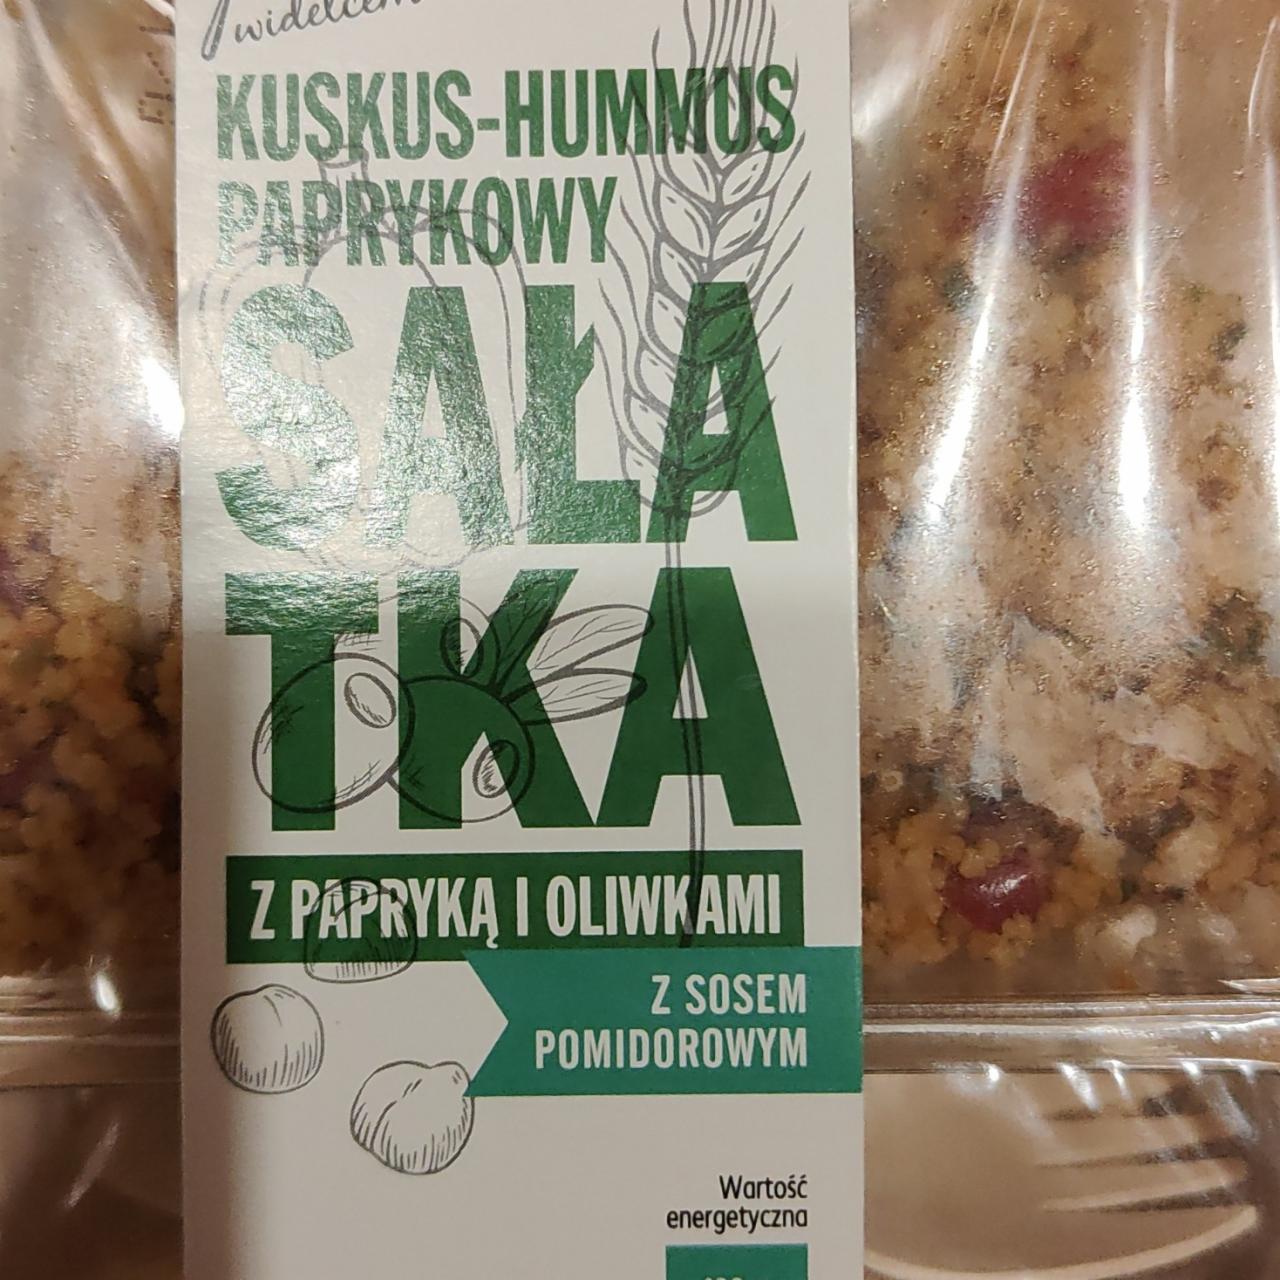 Fotografie - Sałatka kuskus-hummus paprykowy z papryką i oliwkami K-to go